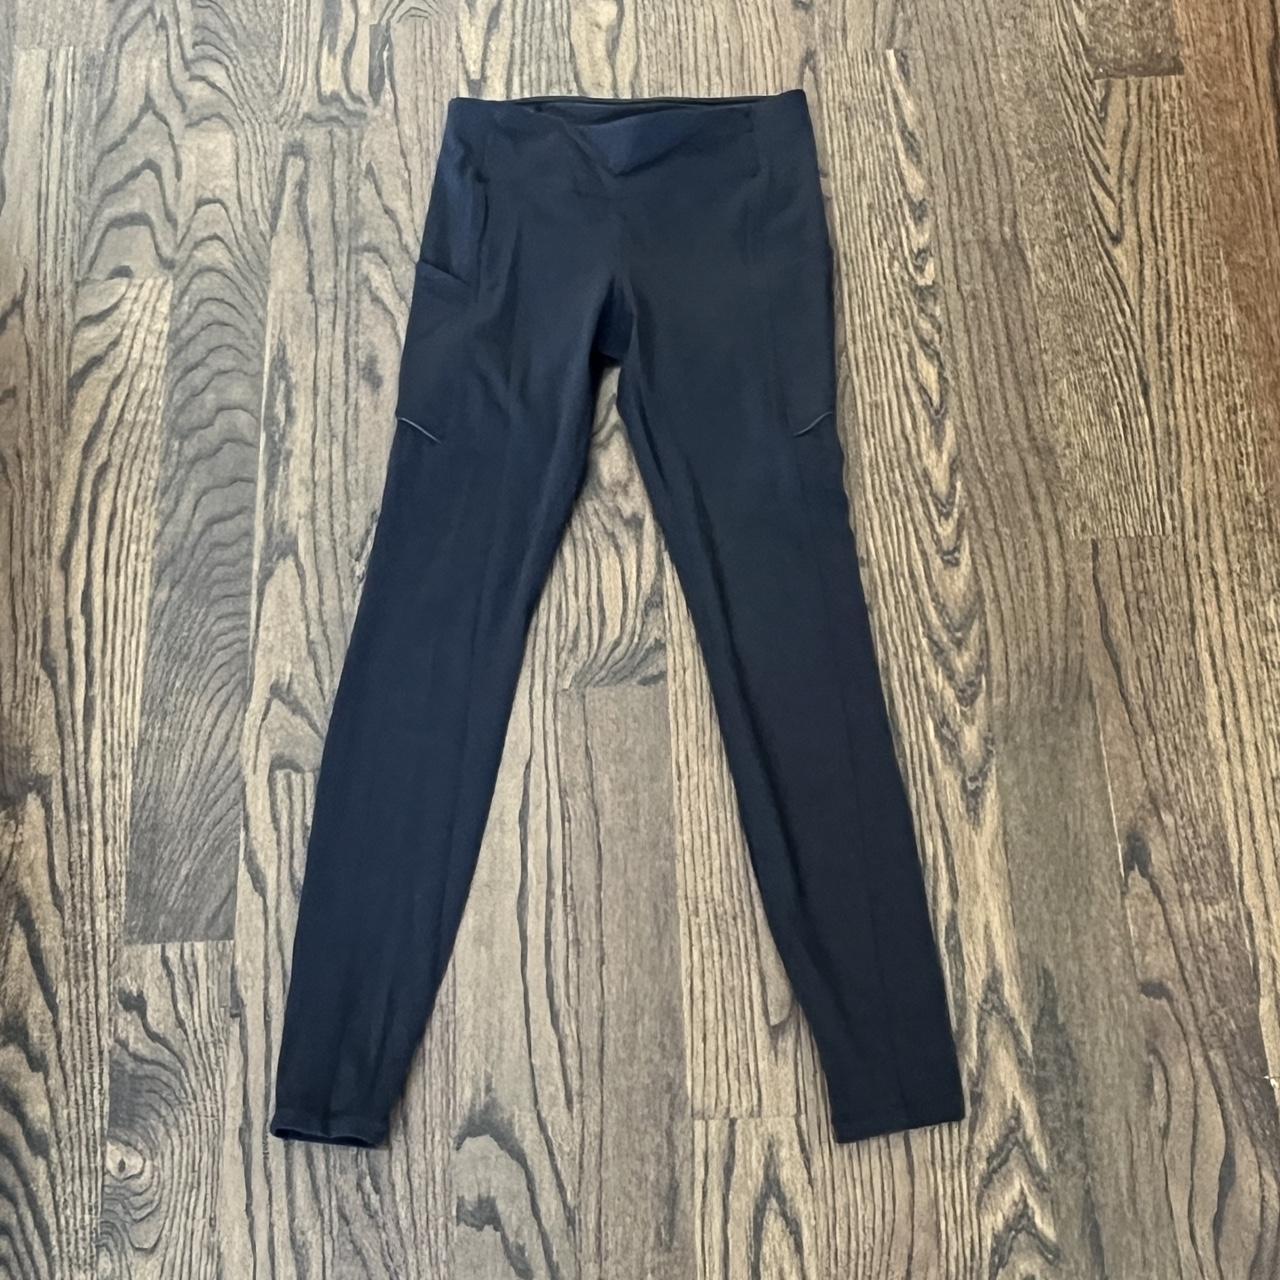 Lululemon full length leggings - Size 6 - 2 side - Depop